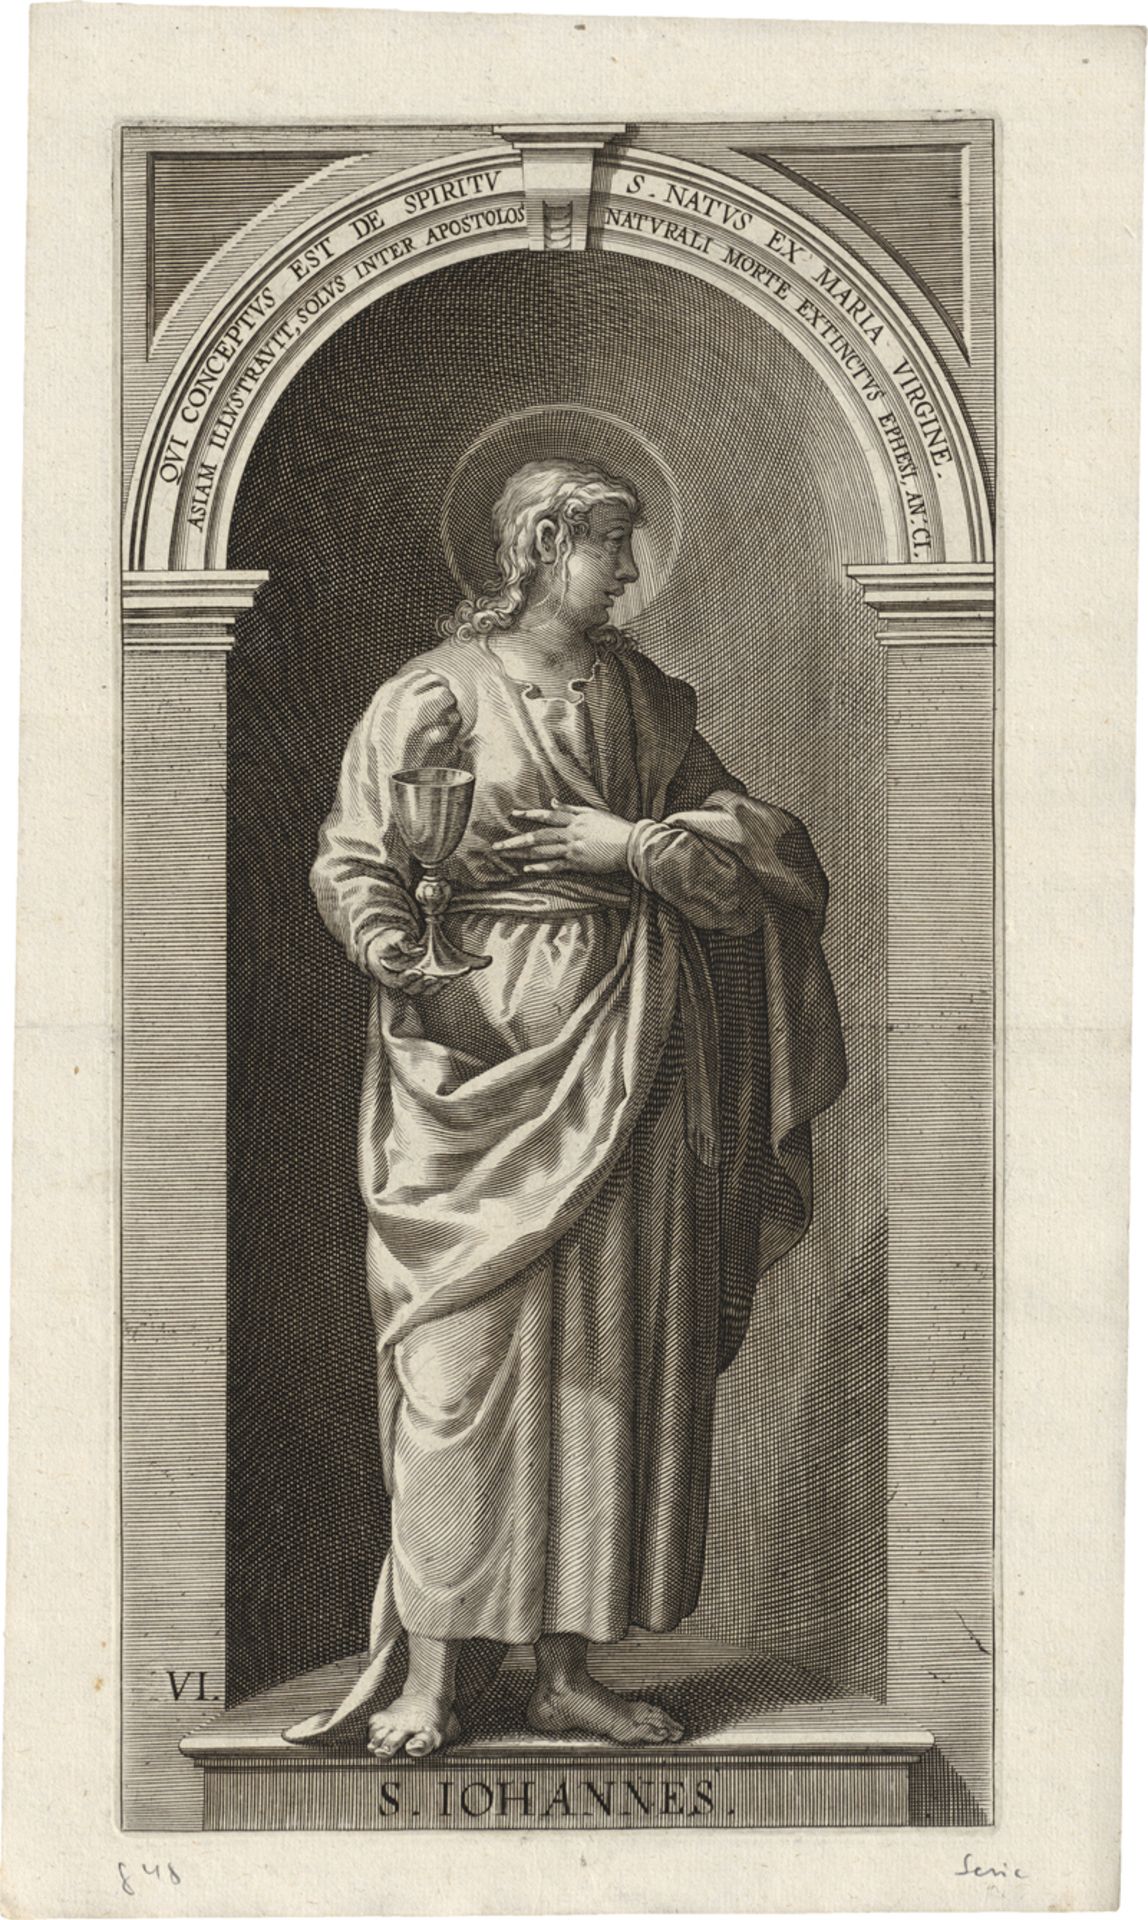 Kilian, Lucas: Sanctuarium Christianorum